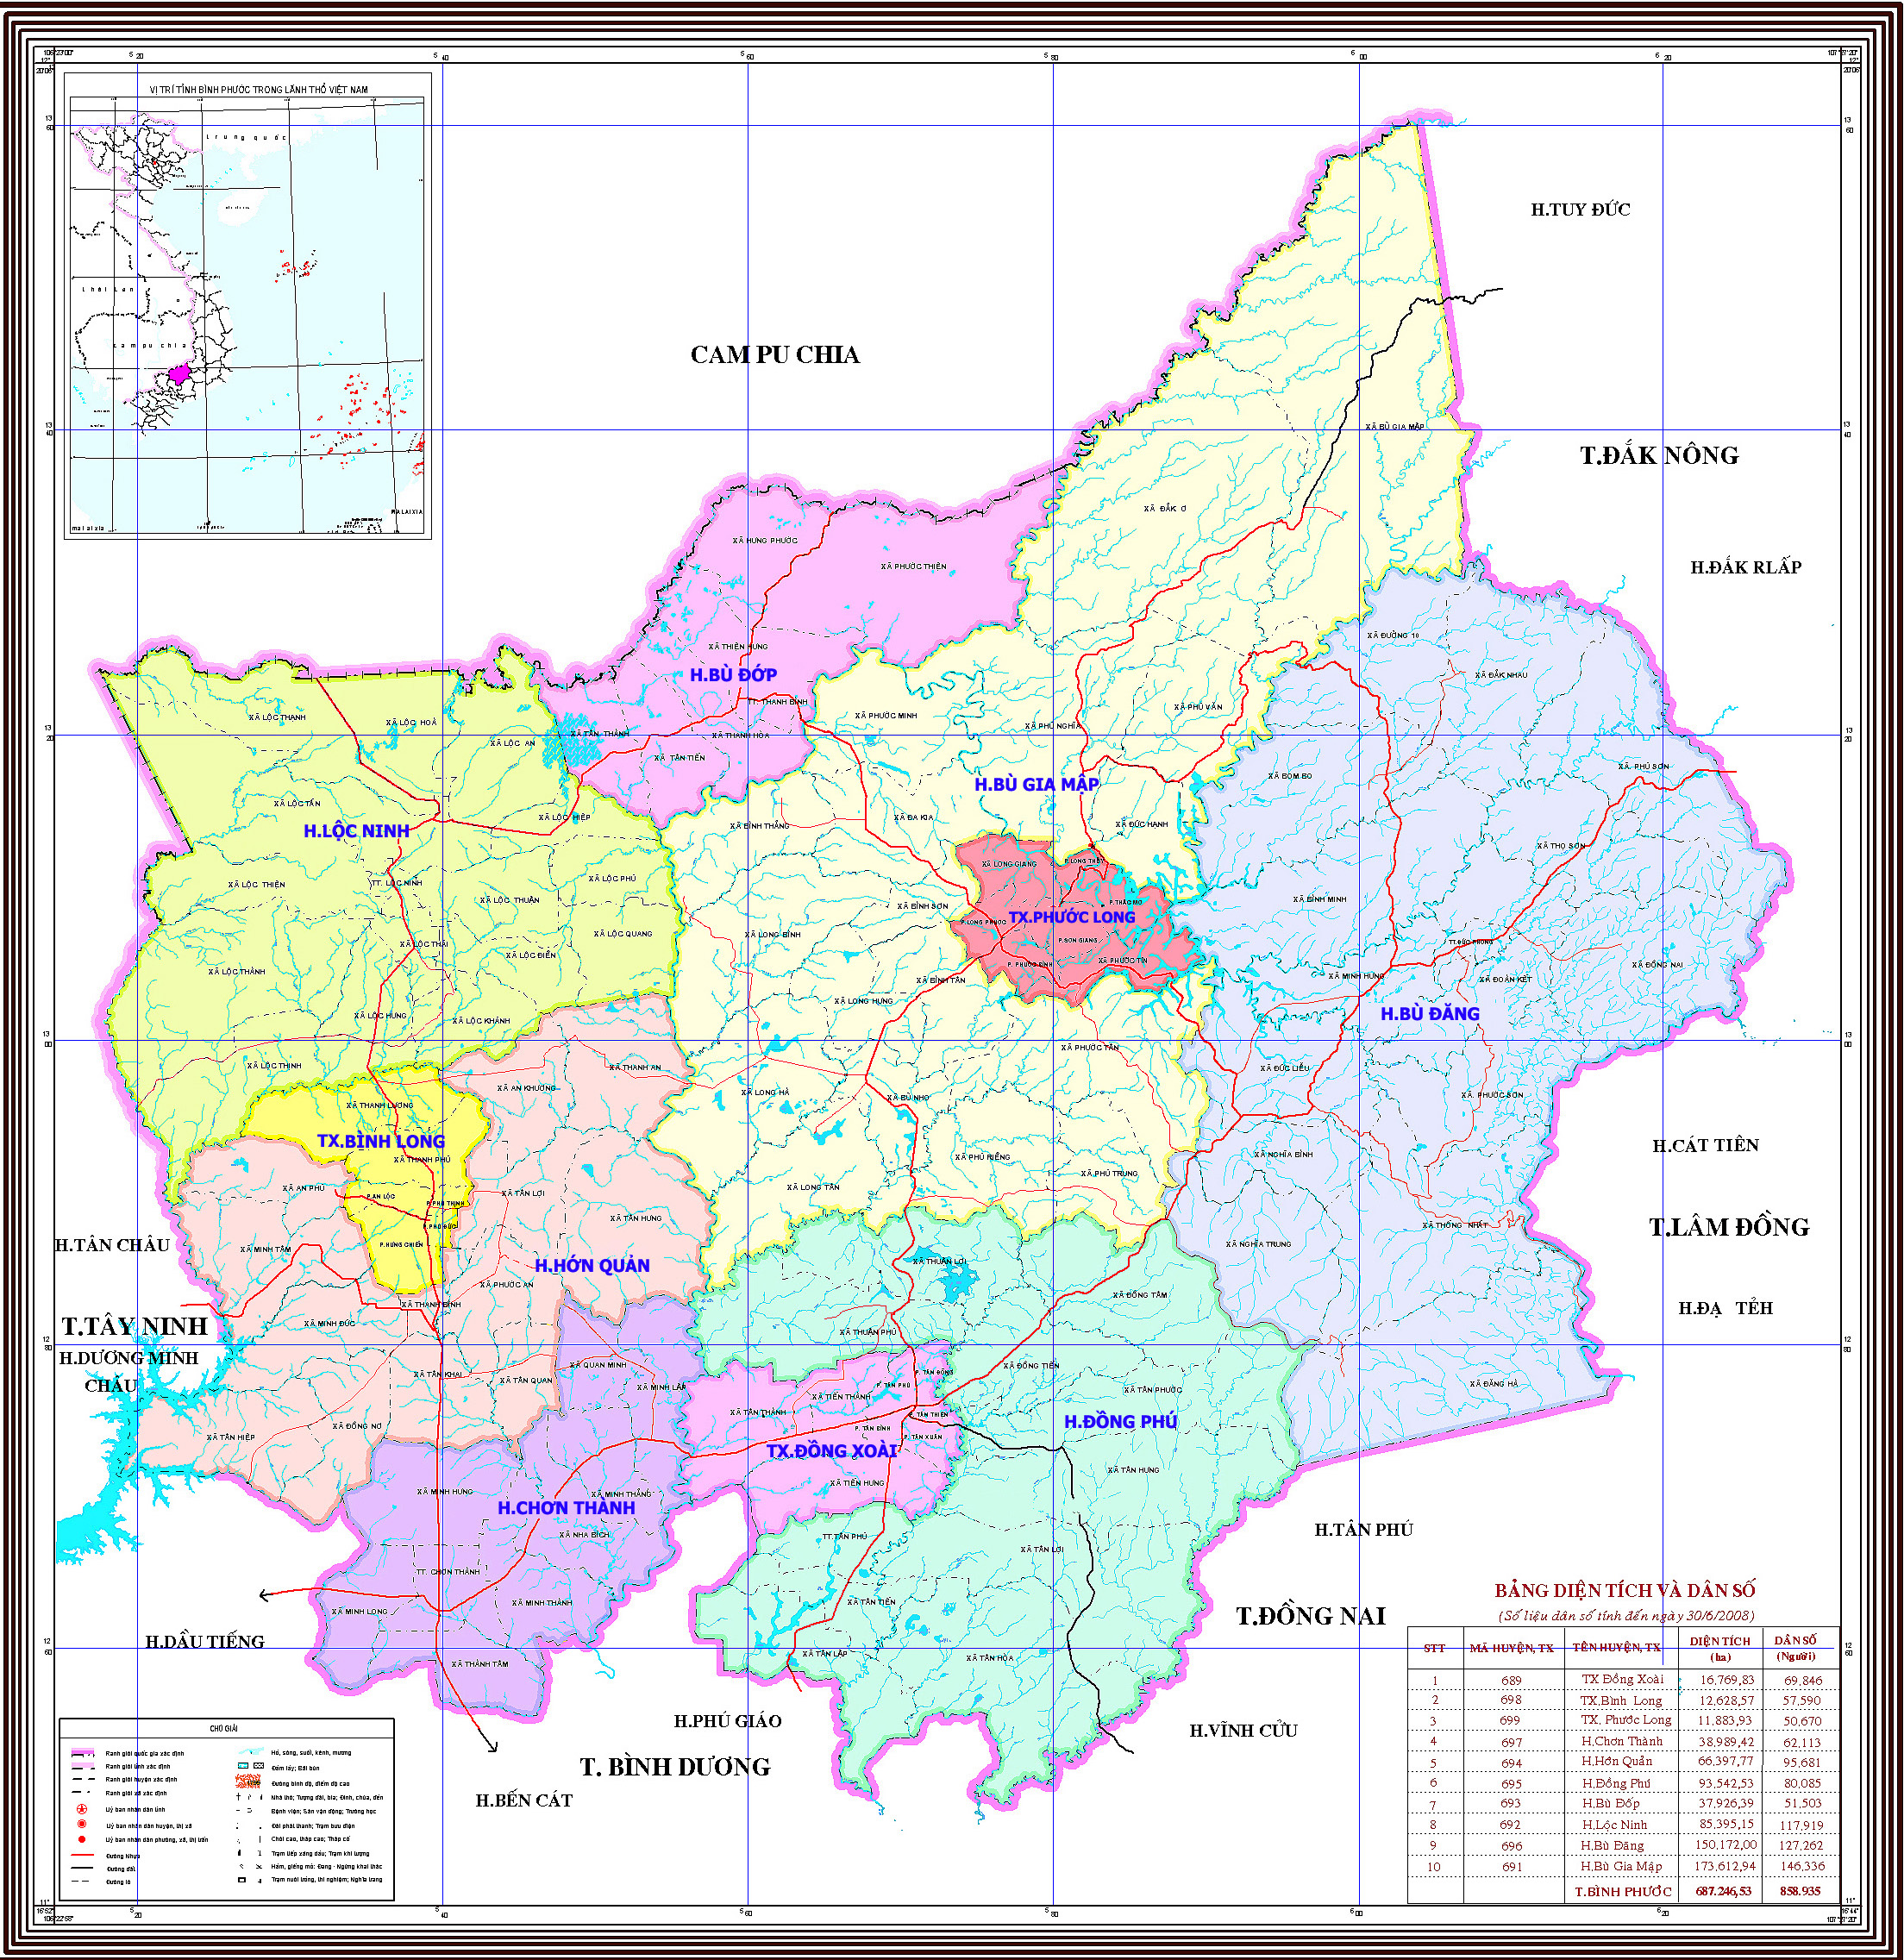 Bình Phước bản đồ hành chính:
Bản đồ hành chính của Bình Phước được cập nhật đầy đủ, chi tiết và phân loại rõ ràng, giúp bạn tìm kiếm dễ dàng các địa điểm và khu vực quan trọng nhất trong tỉnh.